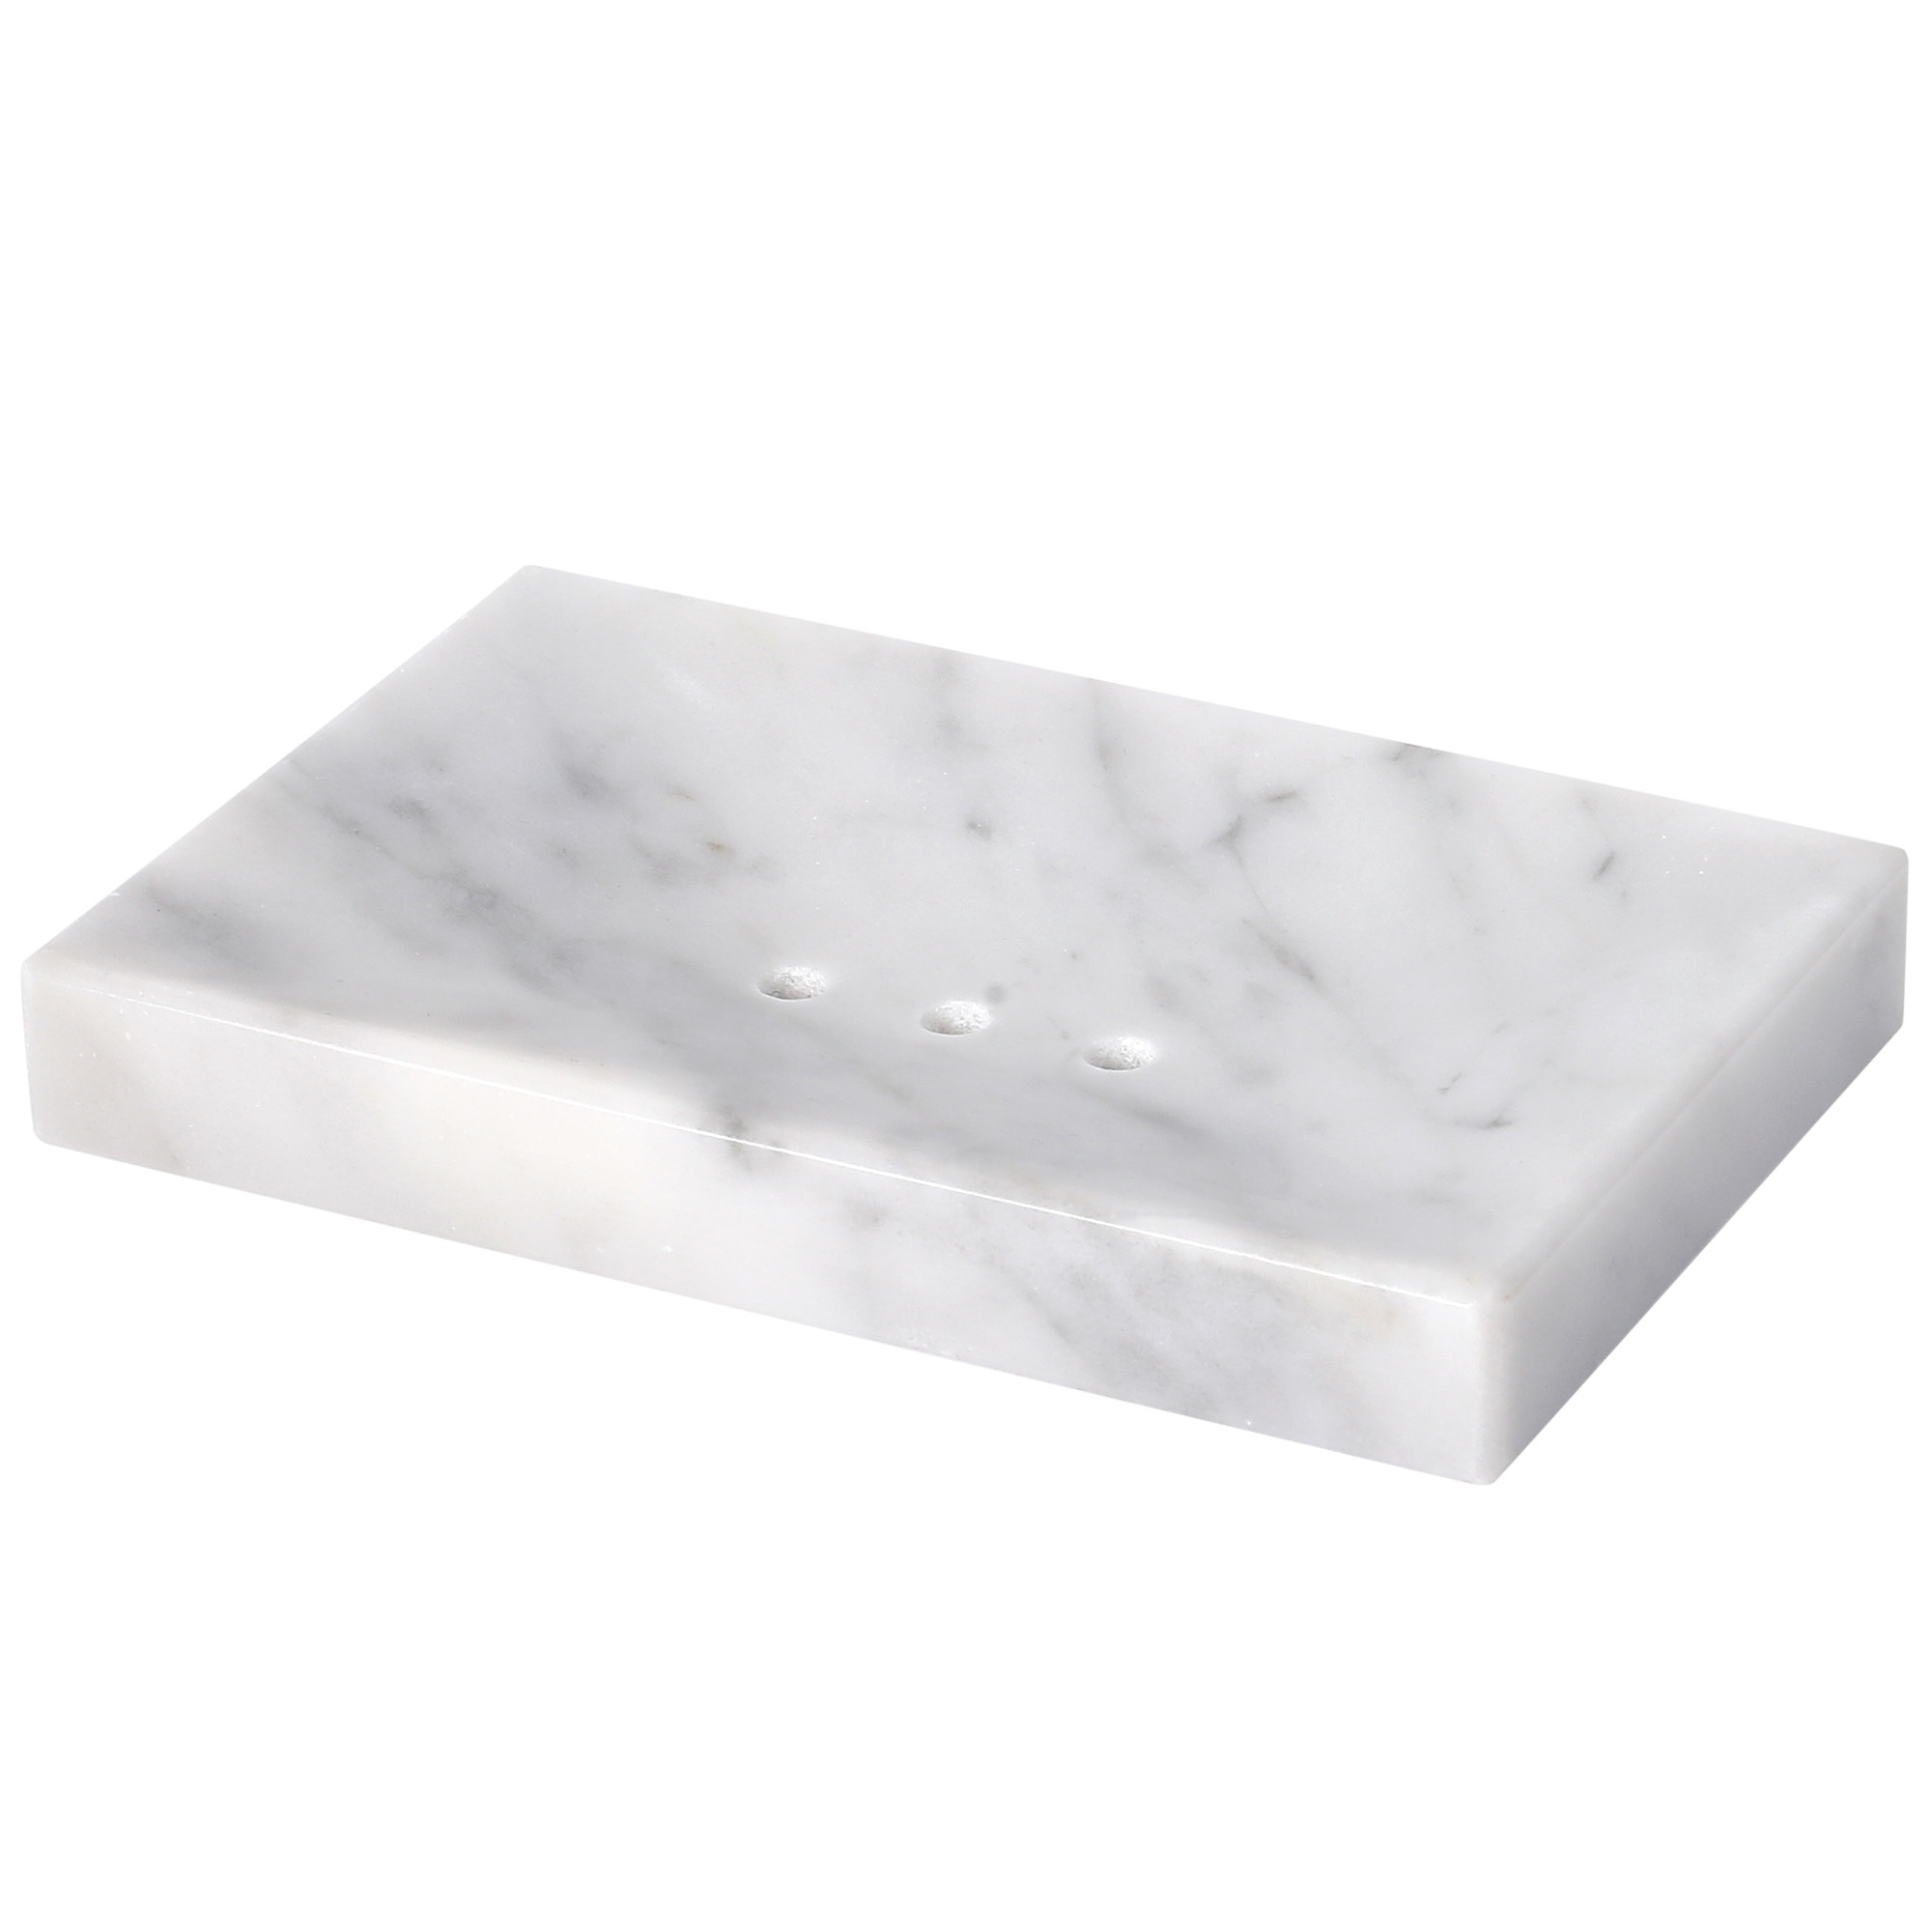 肥皂盒（方形斜切内凹）-细花白